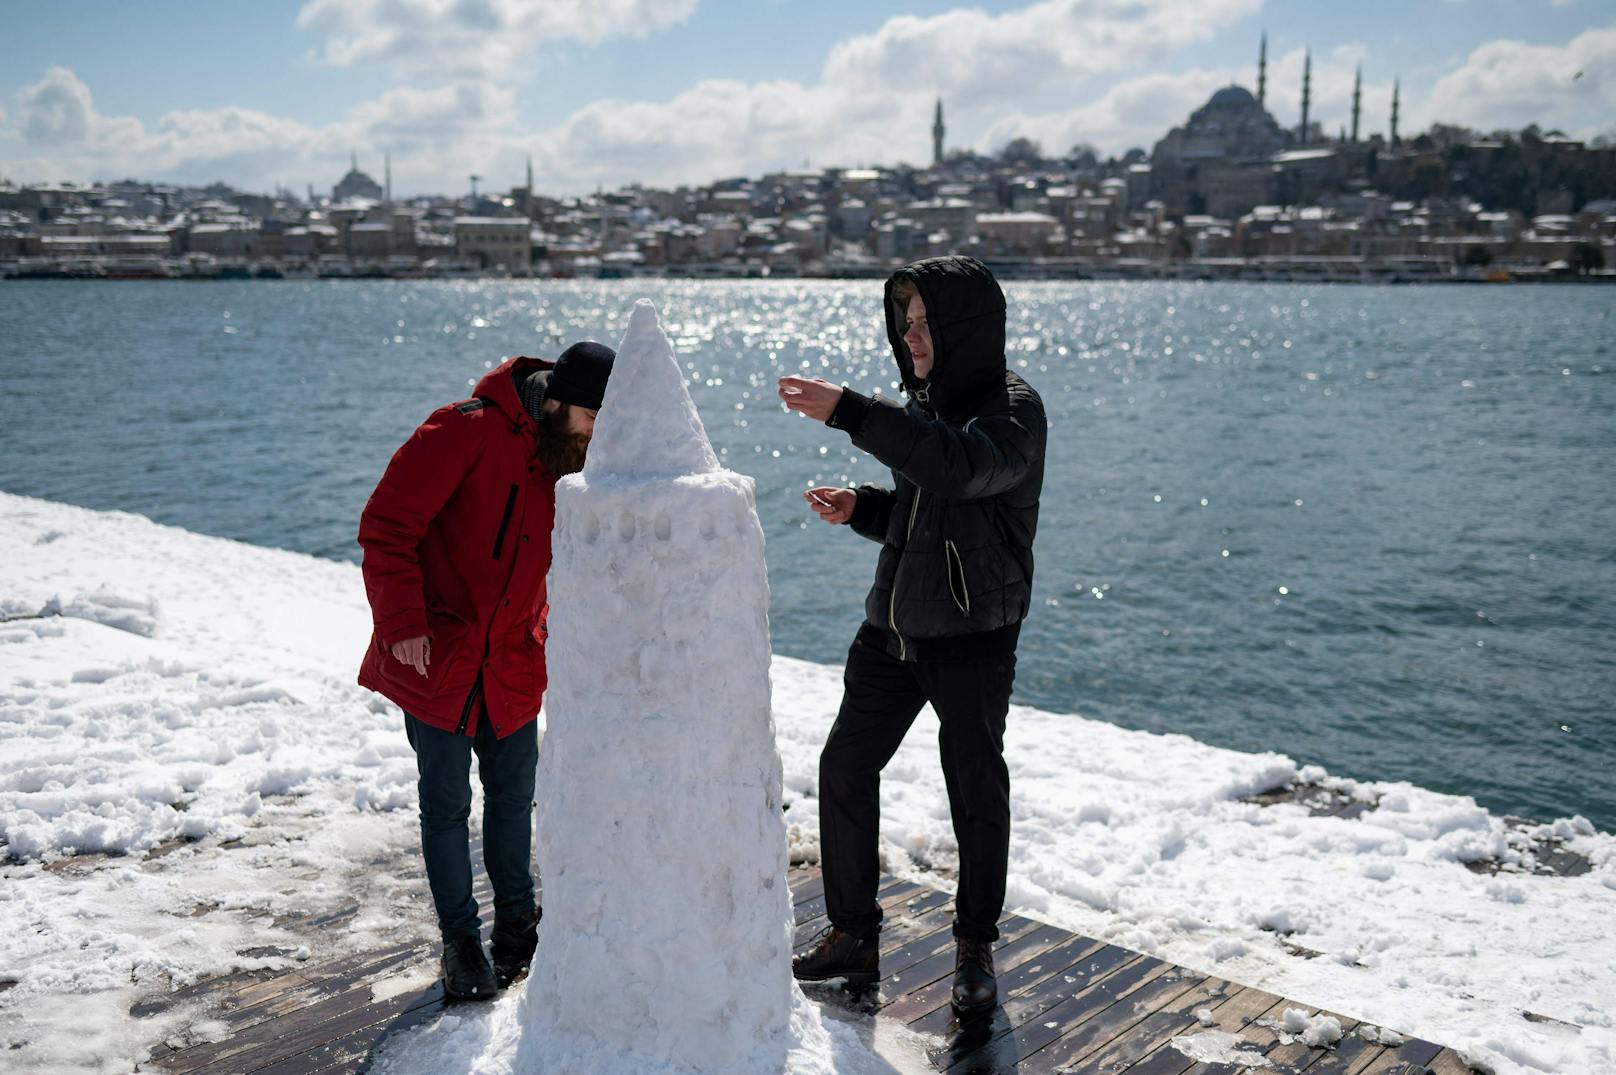 Einige nutzten den Schnee, um den Galata Tower, eines der berühmtesten Wahrzeichen Istanbuls, in Schneeform nachzubauen.